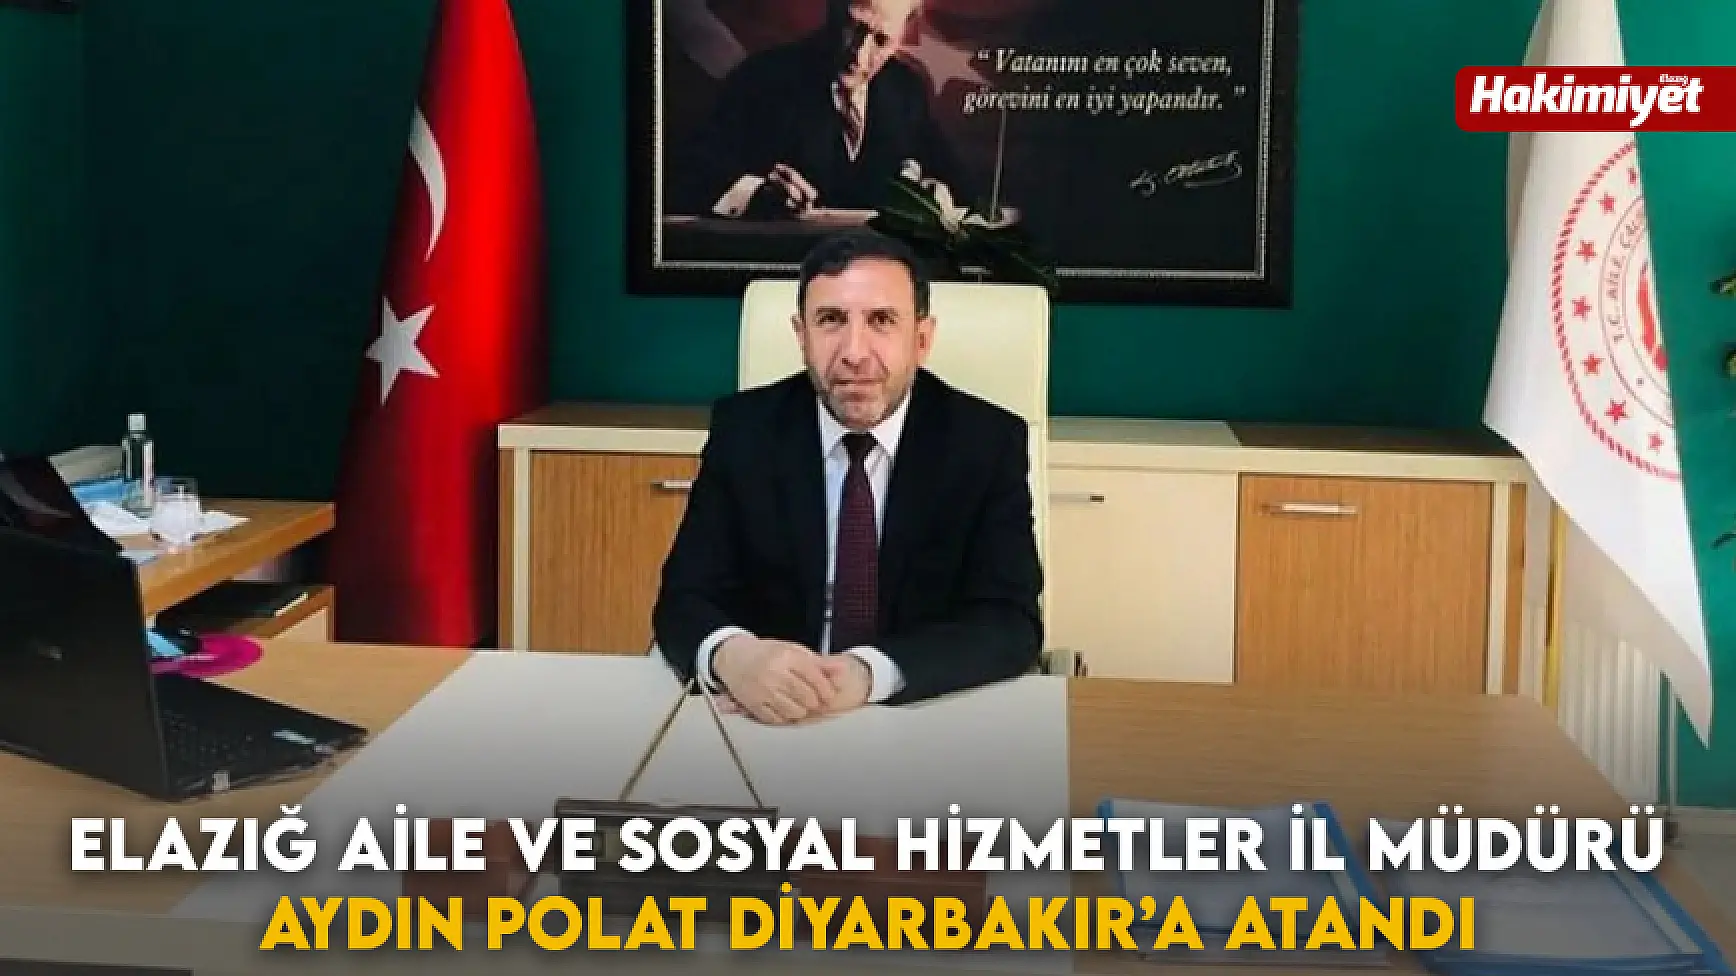 Elazığ Aile ve Sosyal Hizmetler İl Müdürü Aydın Polat Diyarbakır’a Atandı